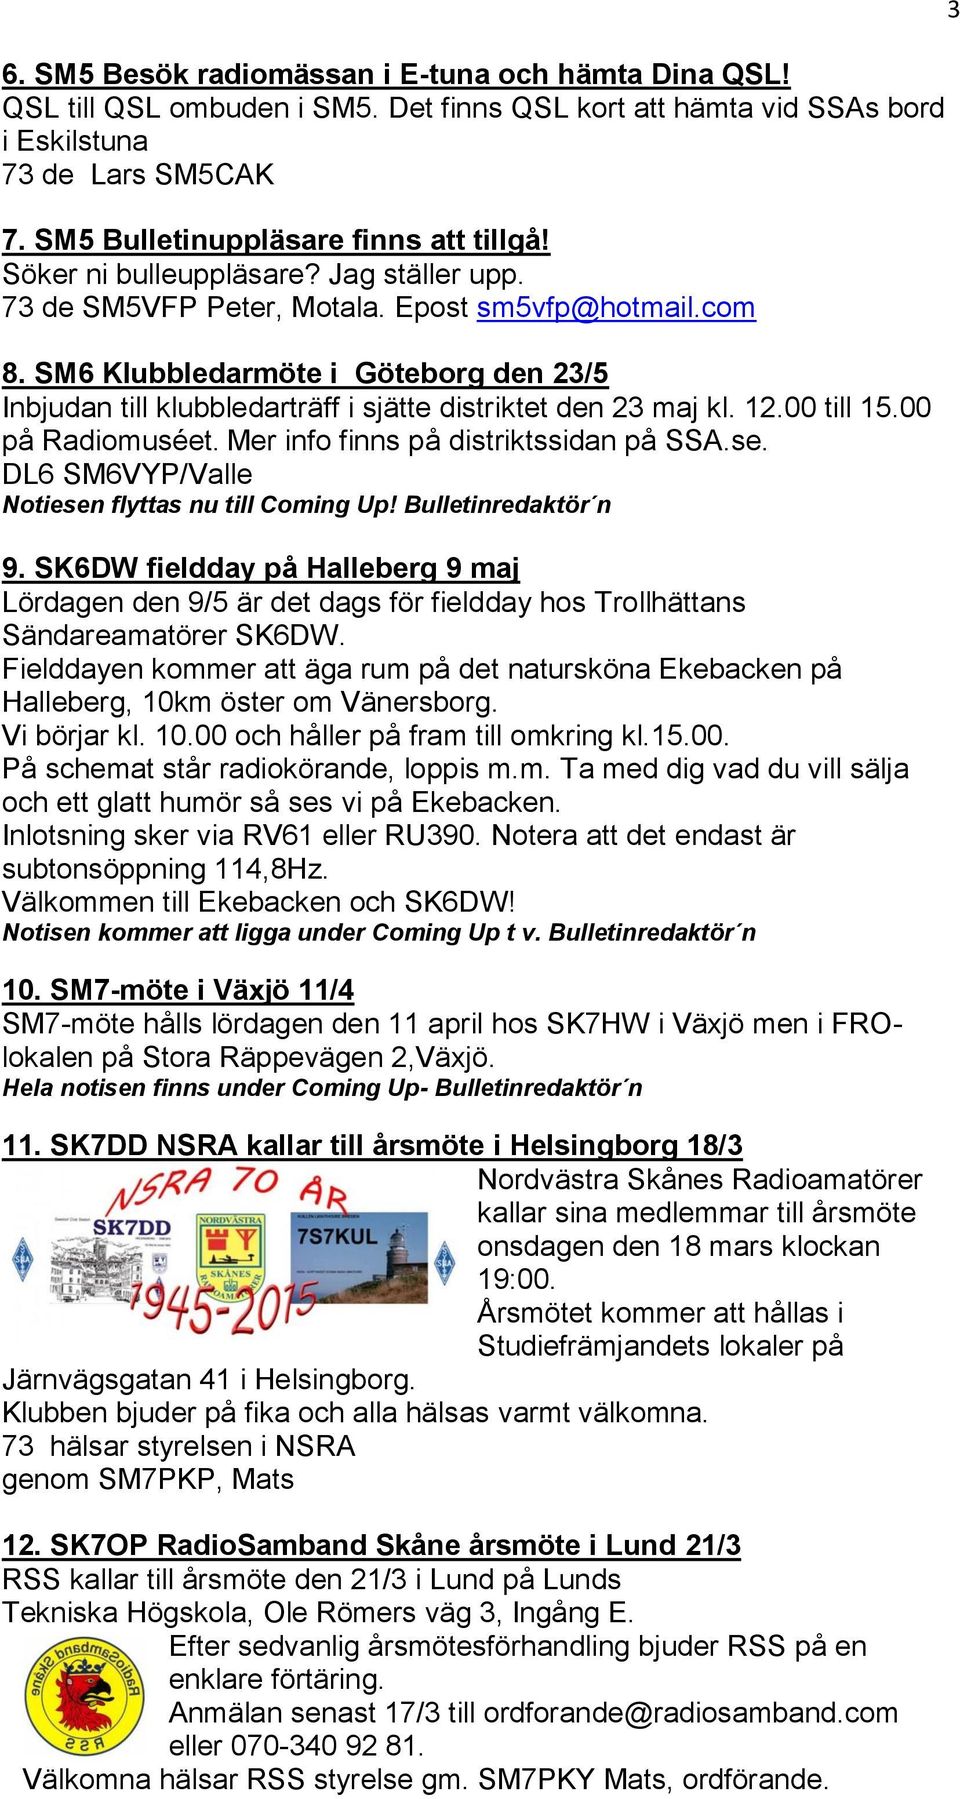 SM6 Klubbledarmöte i Göteborg den 23/5 Inbjudan till klubbledarträff i sjätte distriktet den 23 maj kl. 12.00 till 15.00 på Radiomuséet. Mer info finns på distriktssidan på SSA.se.